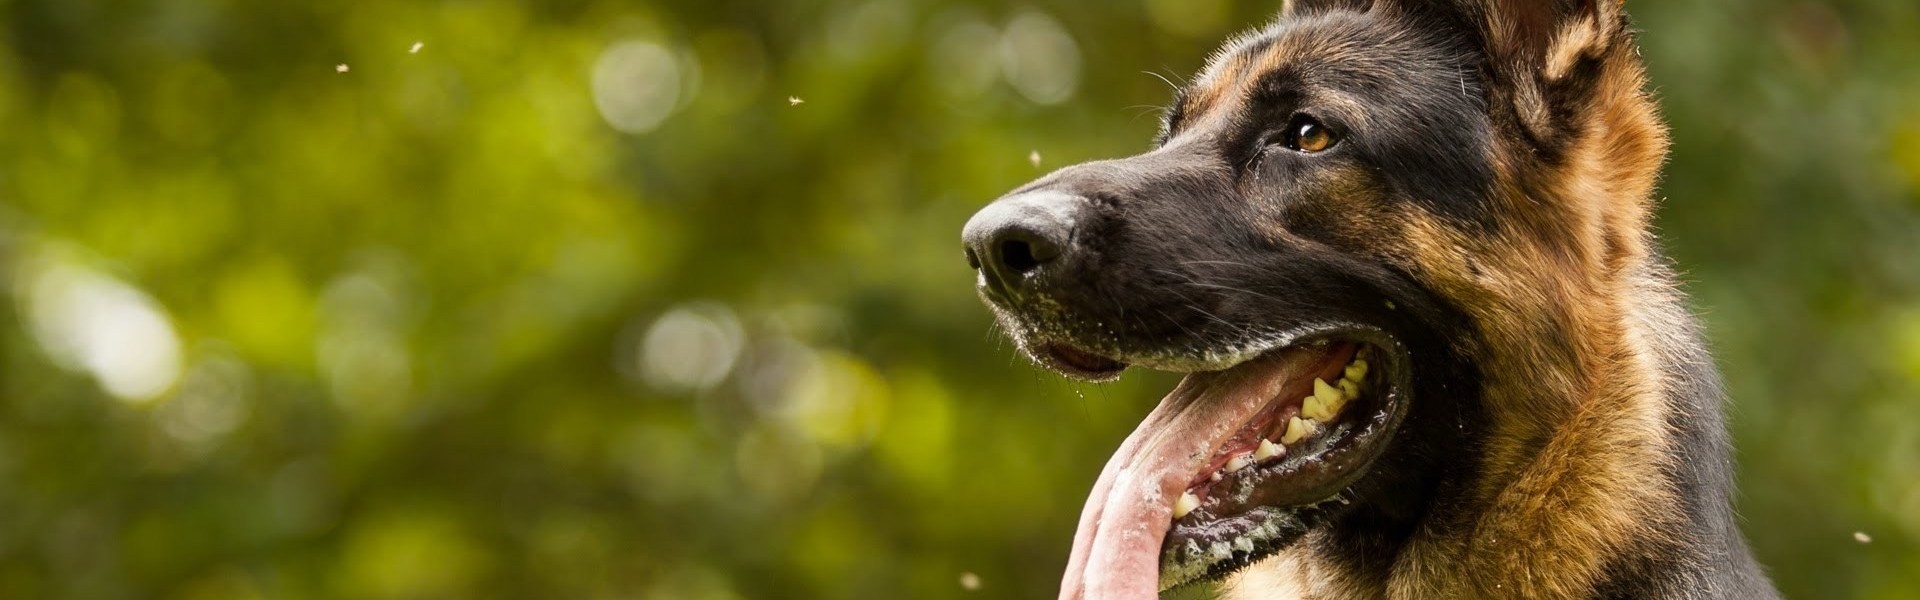 Οι 10 ράτσες σκύλων με το δυνατότερο δάγκωμα (βίντεο)